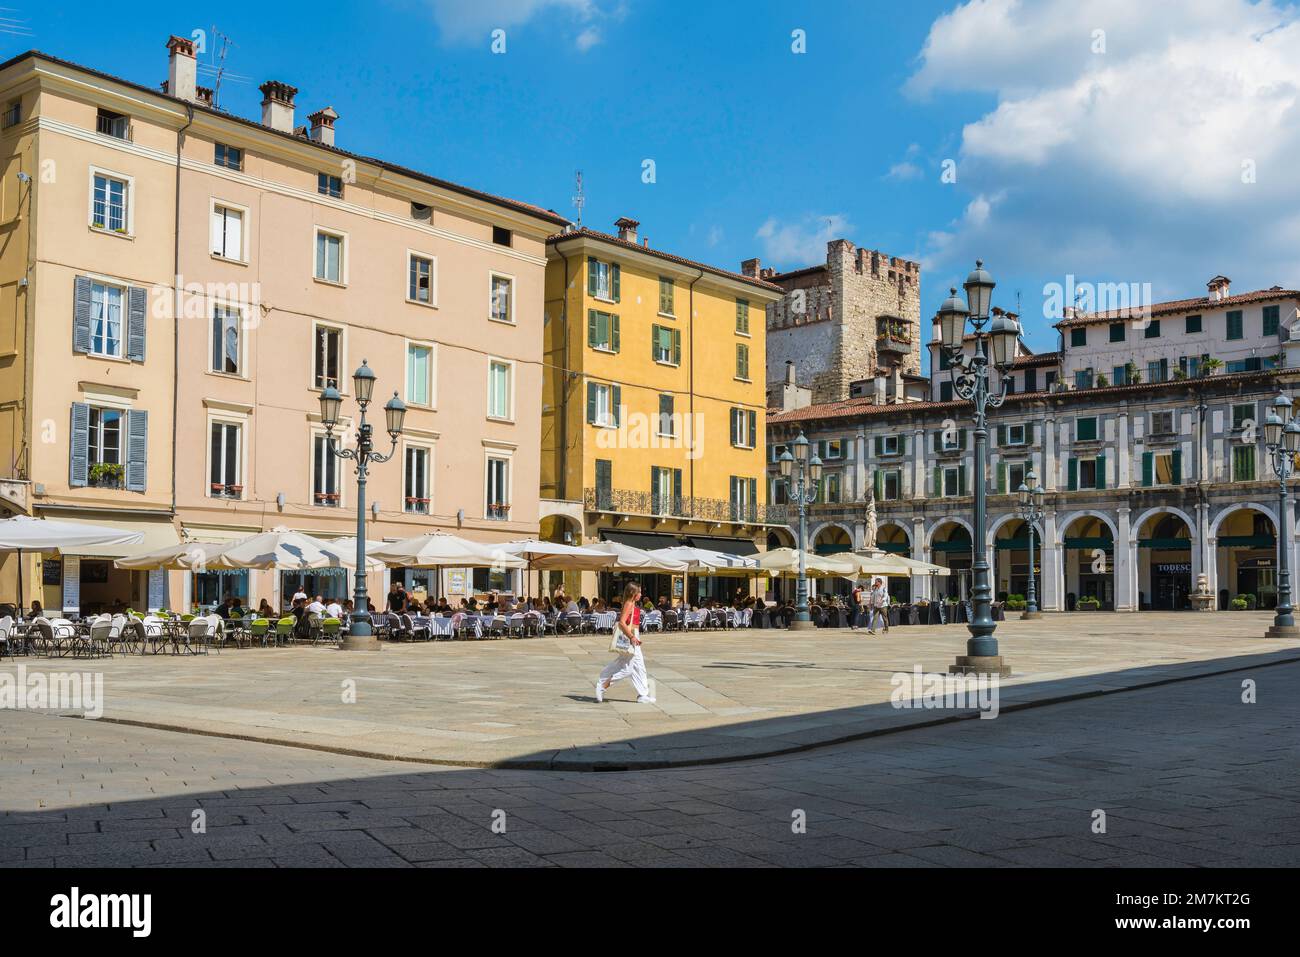 Piazza della Loggia Brescia, vue en été des bâtiments historiques de la Piazza della Loggia dans le centre-ville pittoresque de Brescia, Lombardie, Italie Banque D'Images